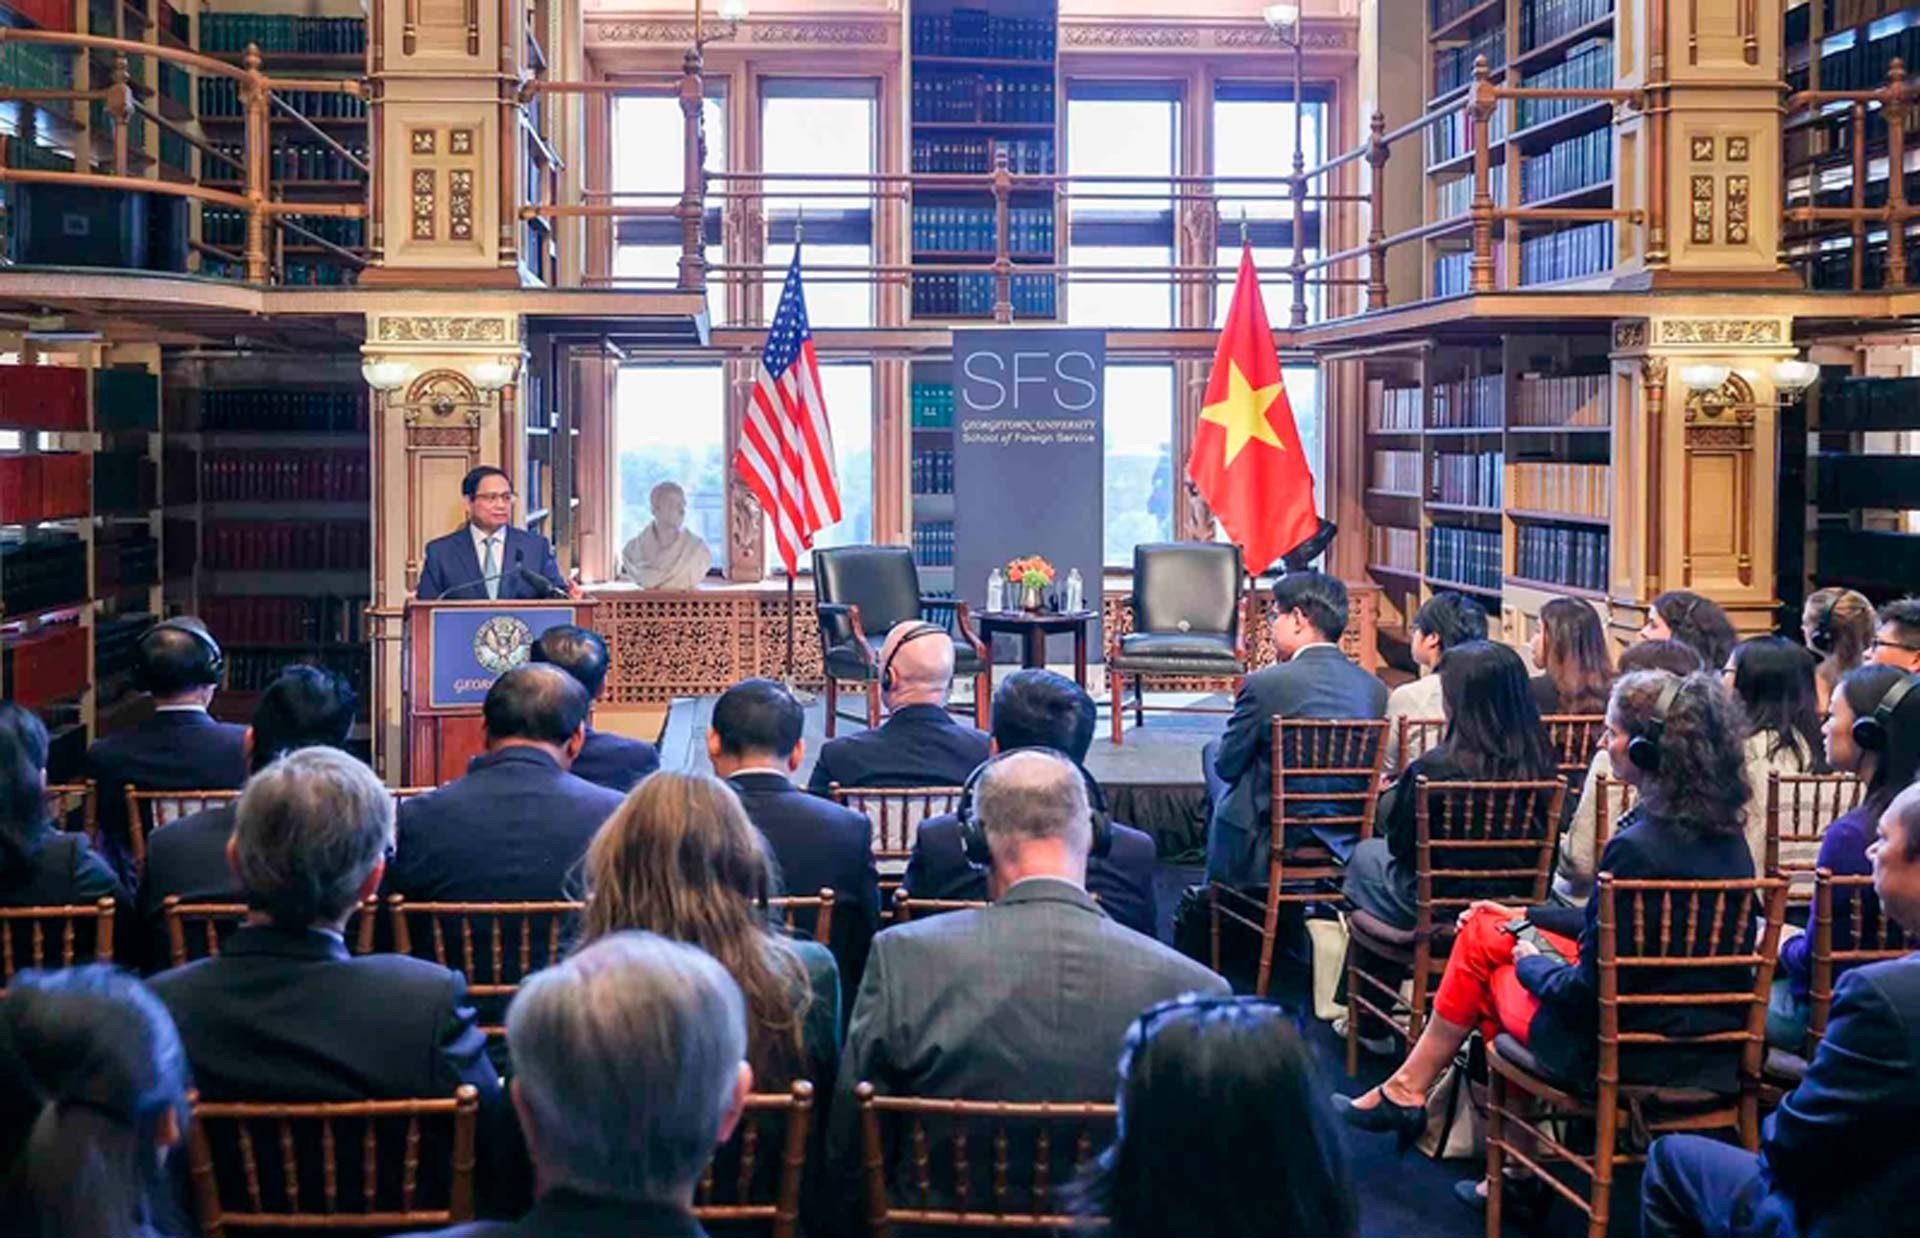 Thủ tướng Chính phủ Phạm Minh Chính đón nhận được nhiều tình cảm từ chính giới, người dân Mỹ trong những chuyến thăm Mỹ năm 2023.